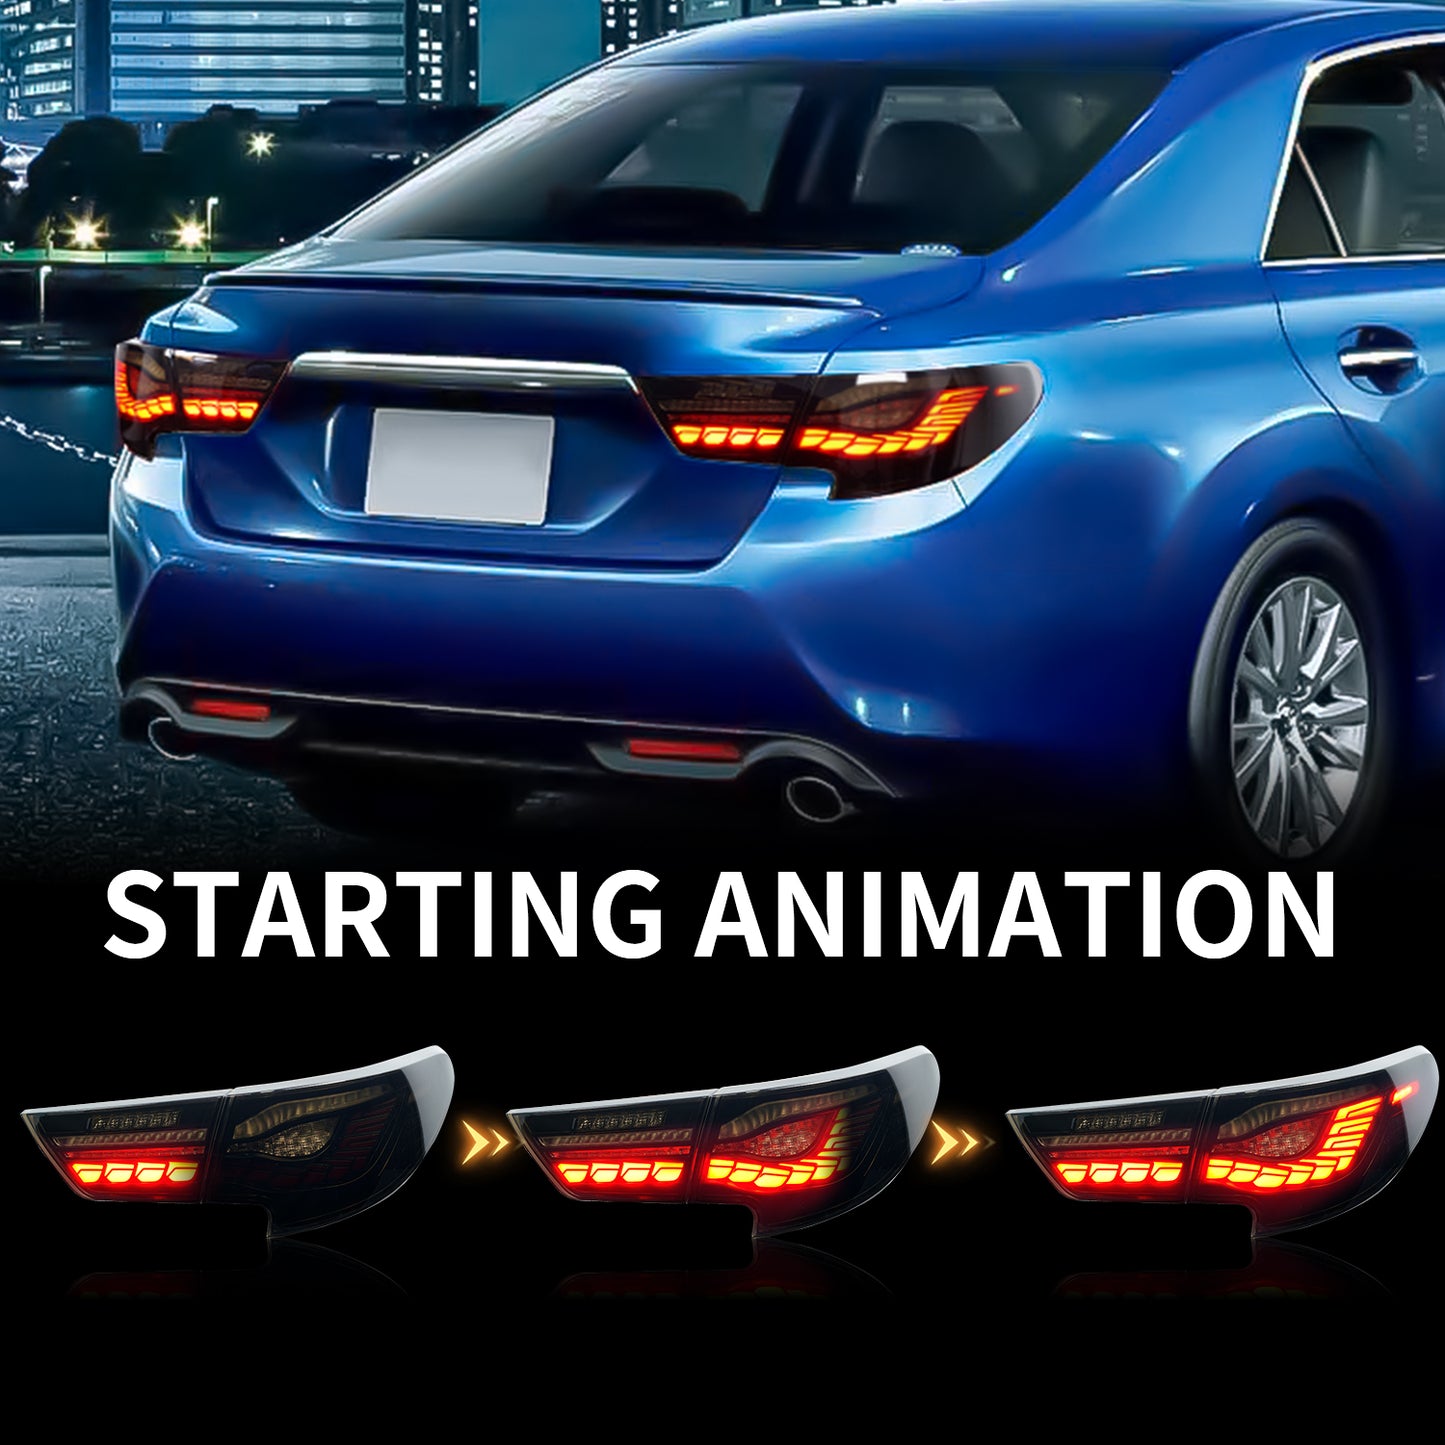 Full LED Tail Lights Assembly For Toyota Reiz/Mark X 2014-2017